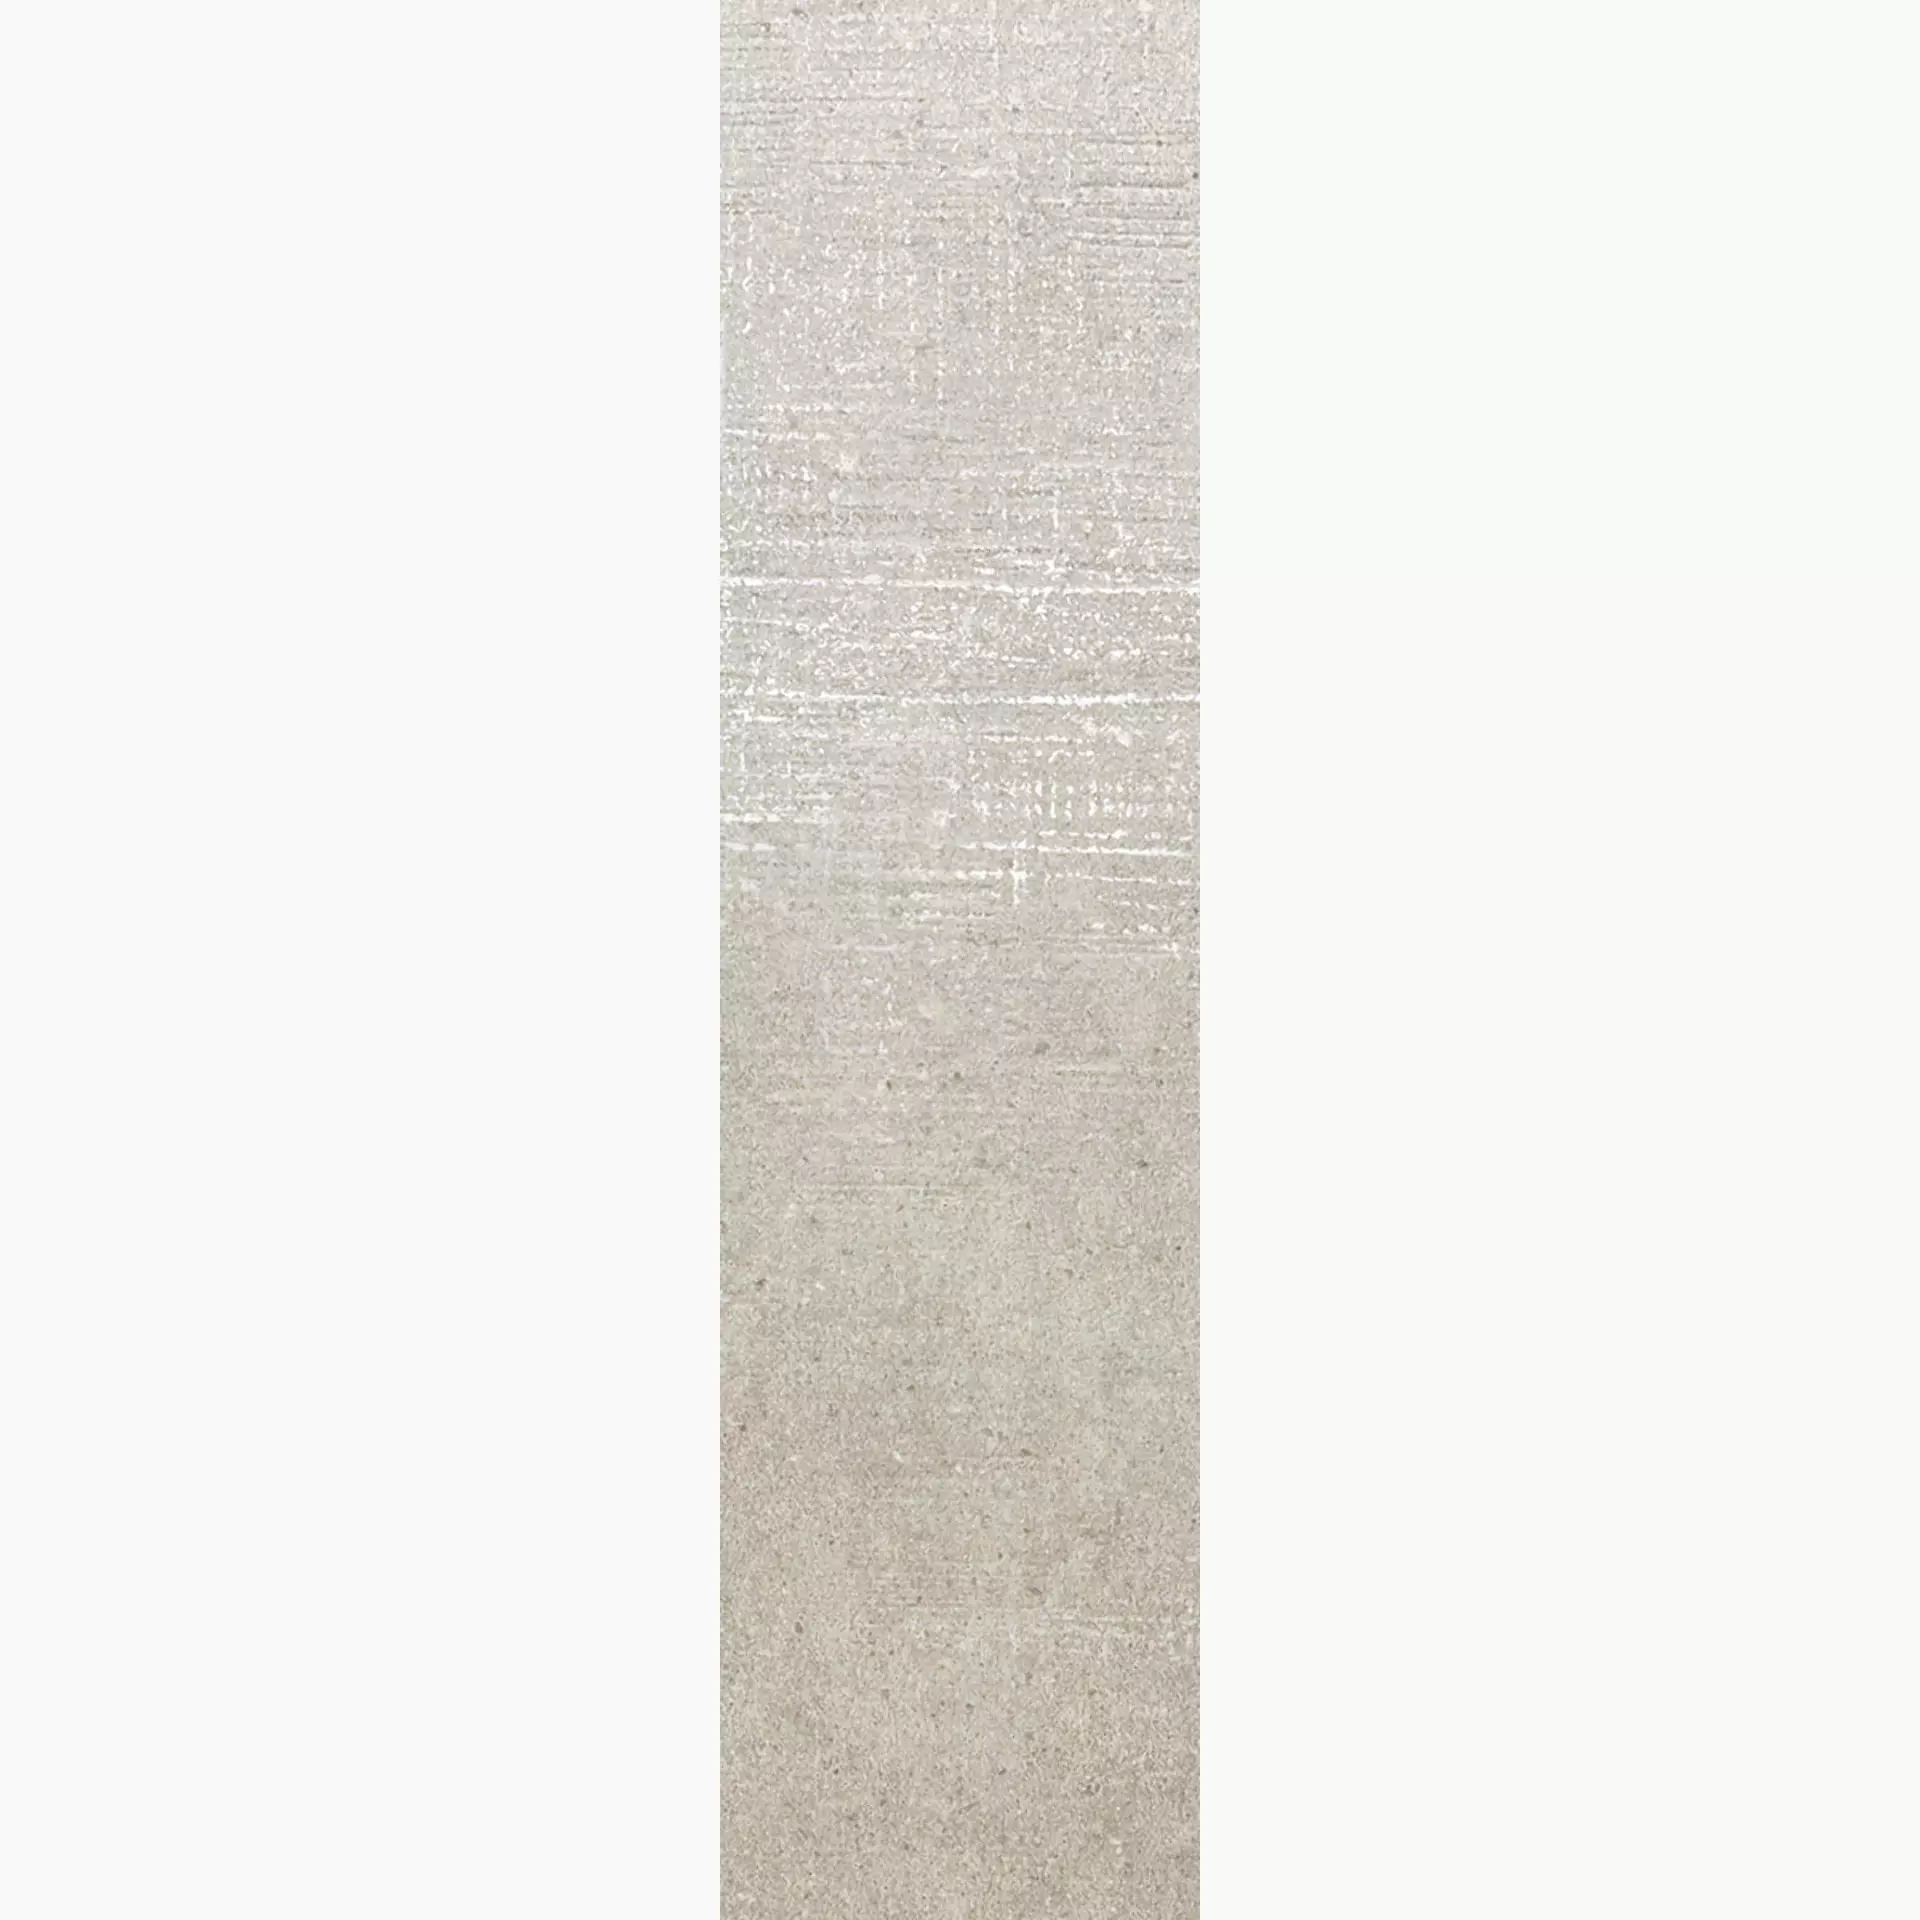 Rondine Loft Beige Lappato J89143 20x80cm rectified 8,5mm